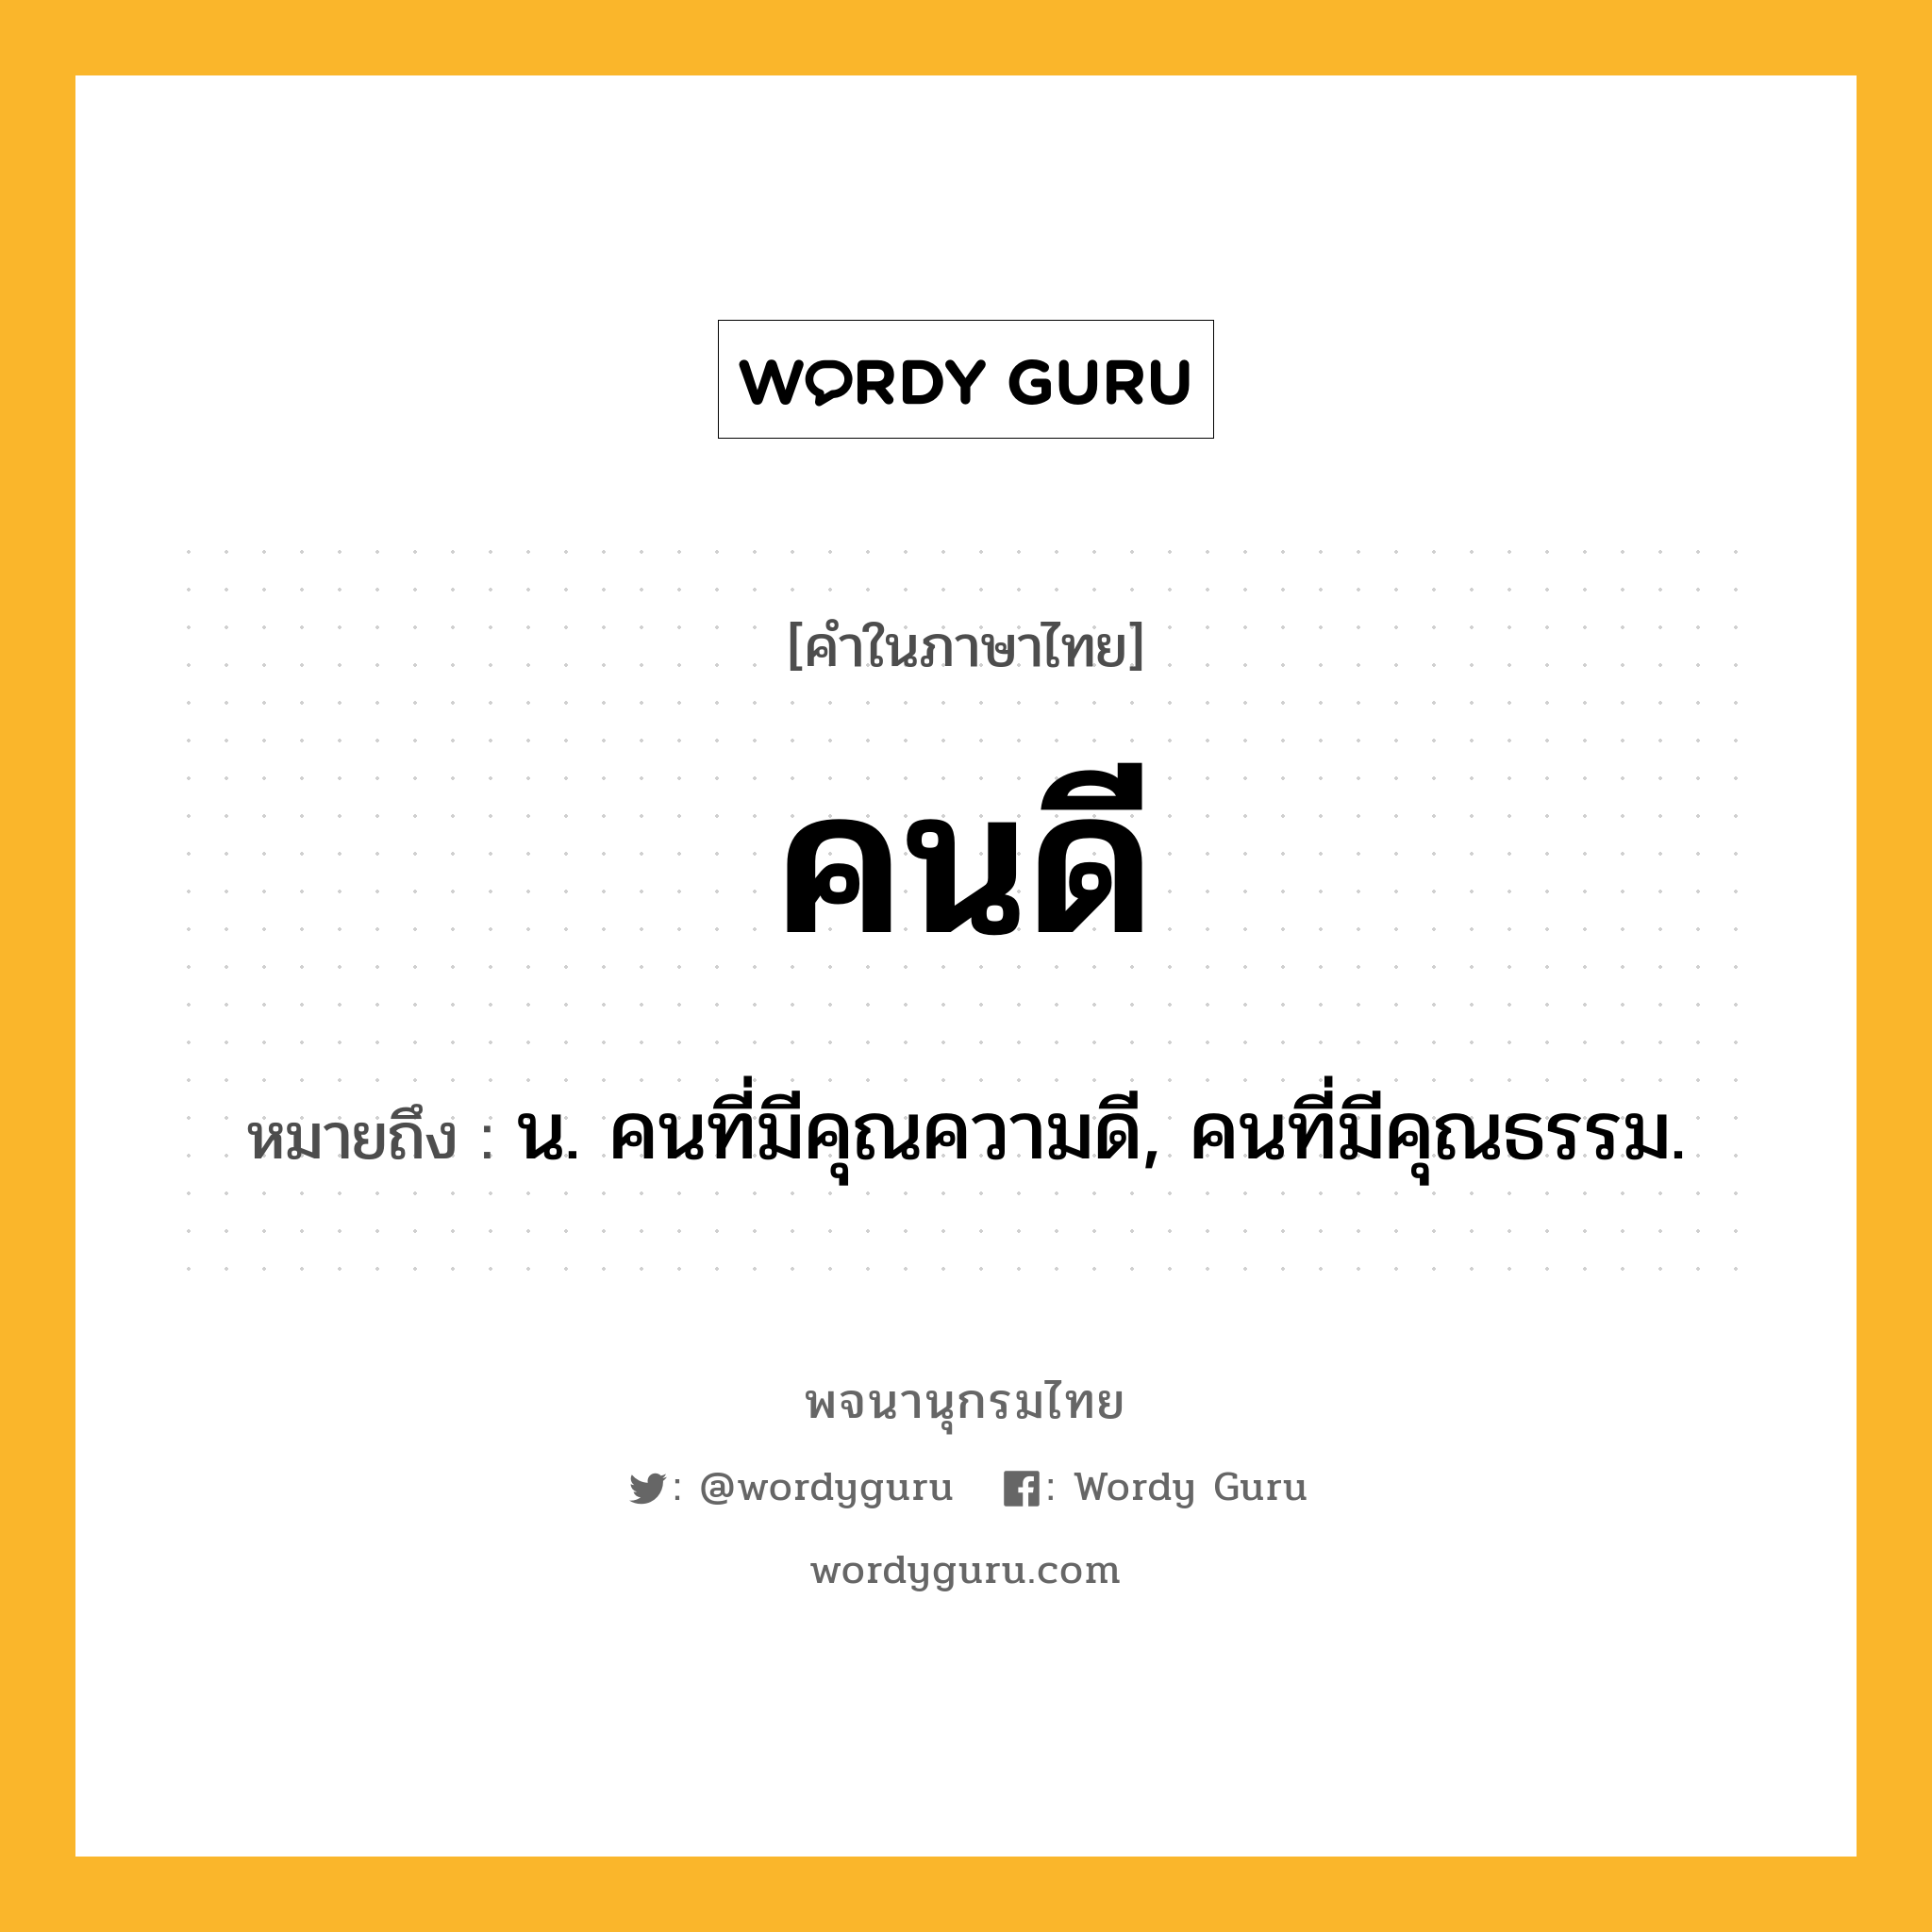 คนดี ความหมาย หมายถึงอะไร?, คำในภาษาไทย คนดี หมายถึง น. คนที่มีคุณความดี, คนที่มีคุณธรรม.